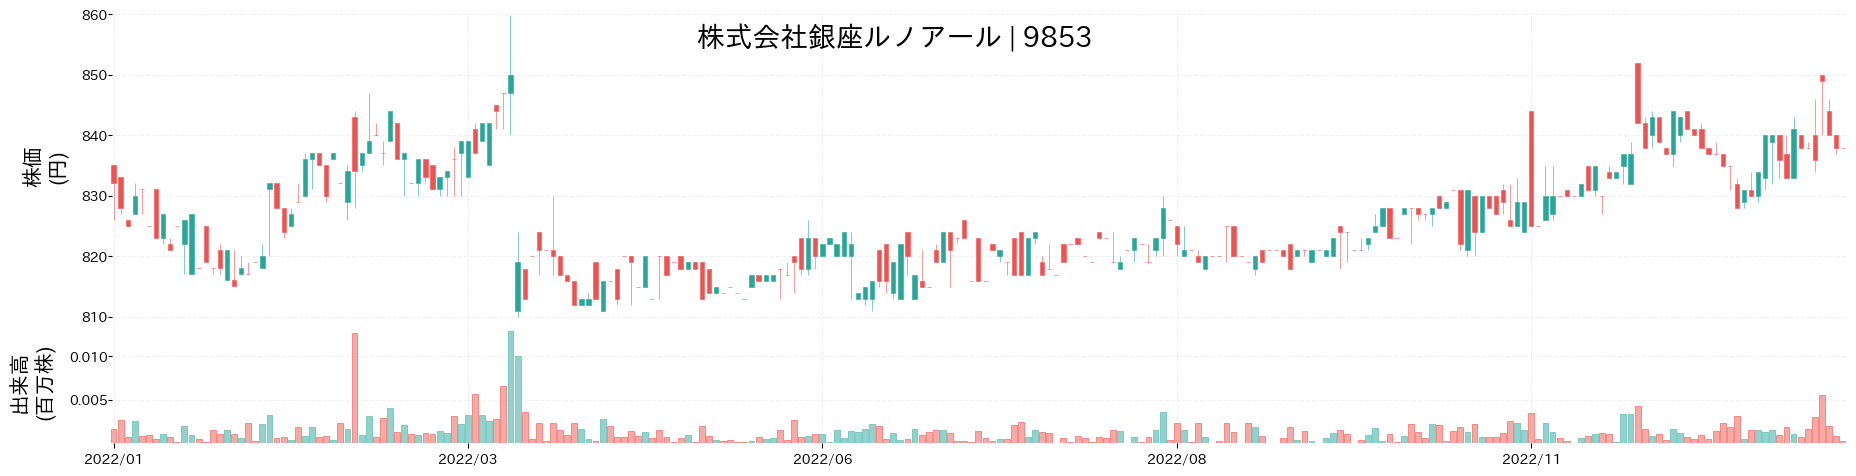 銀座ルノアールの株価推移(2022)